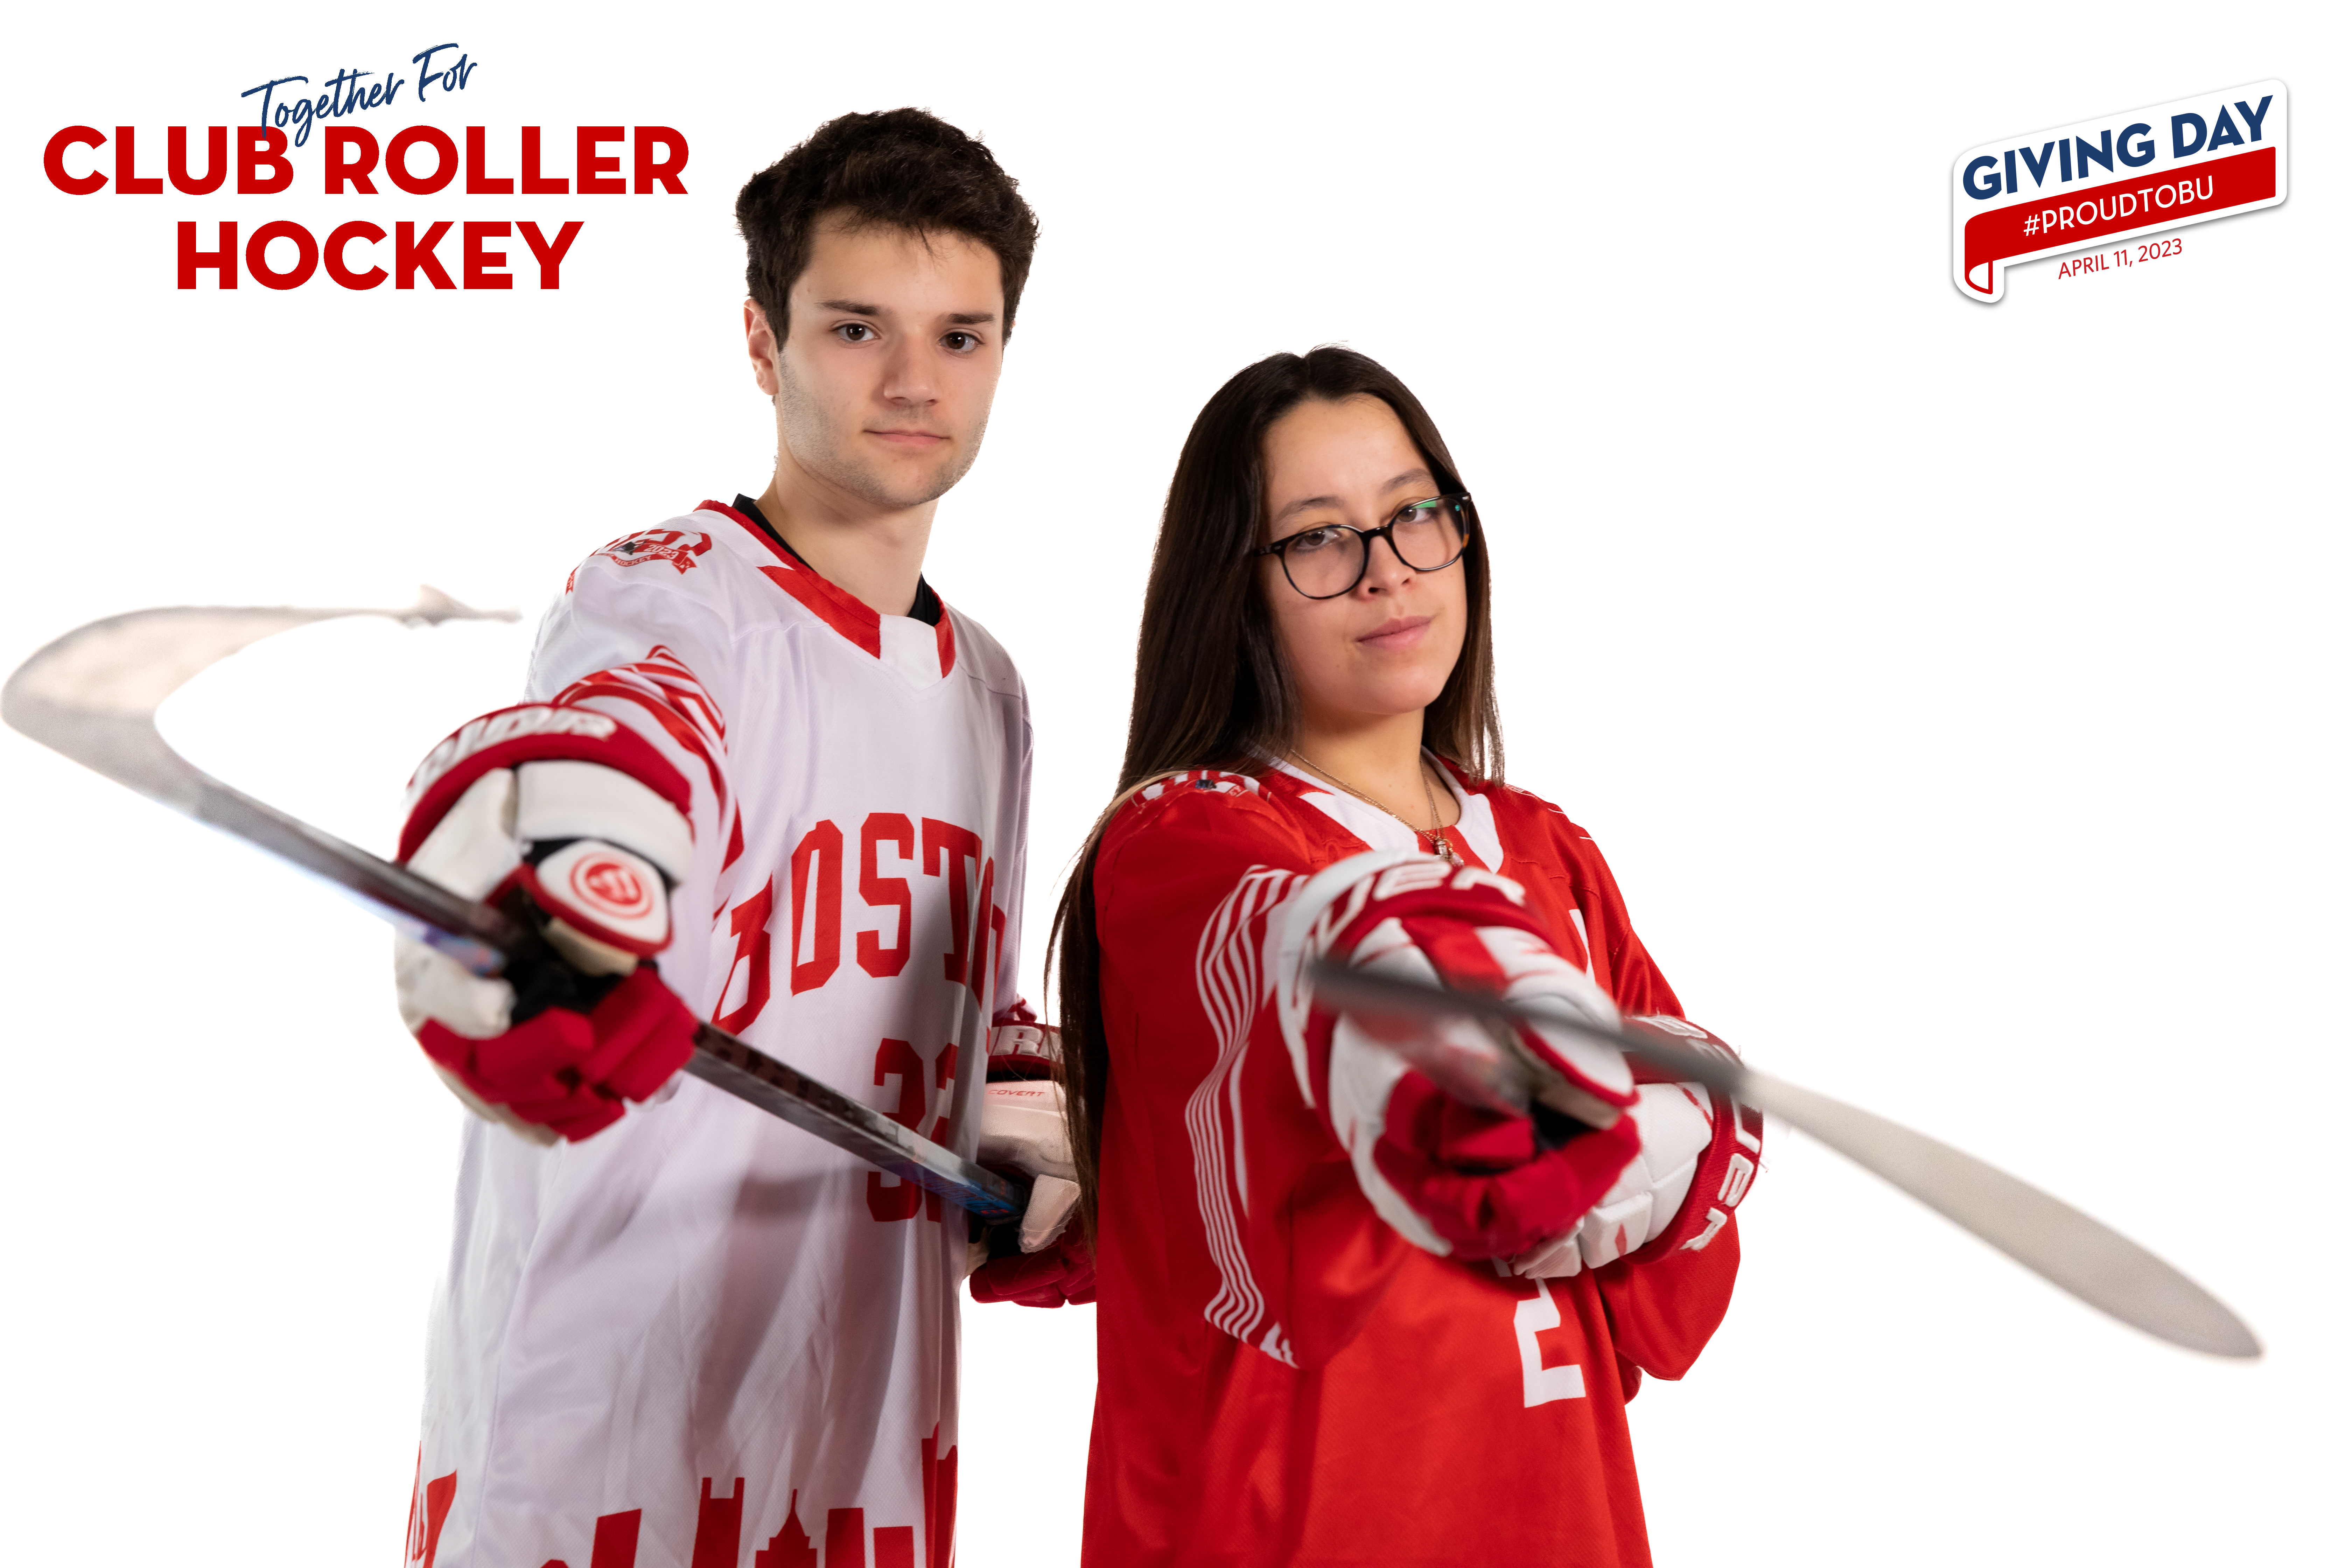 Club-Roller-Hockey-01